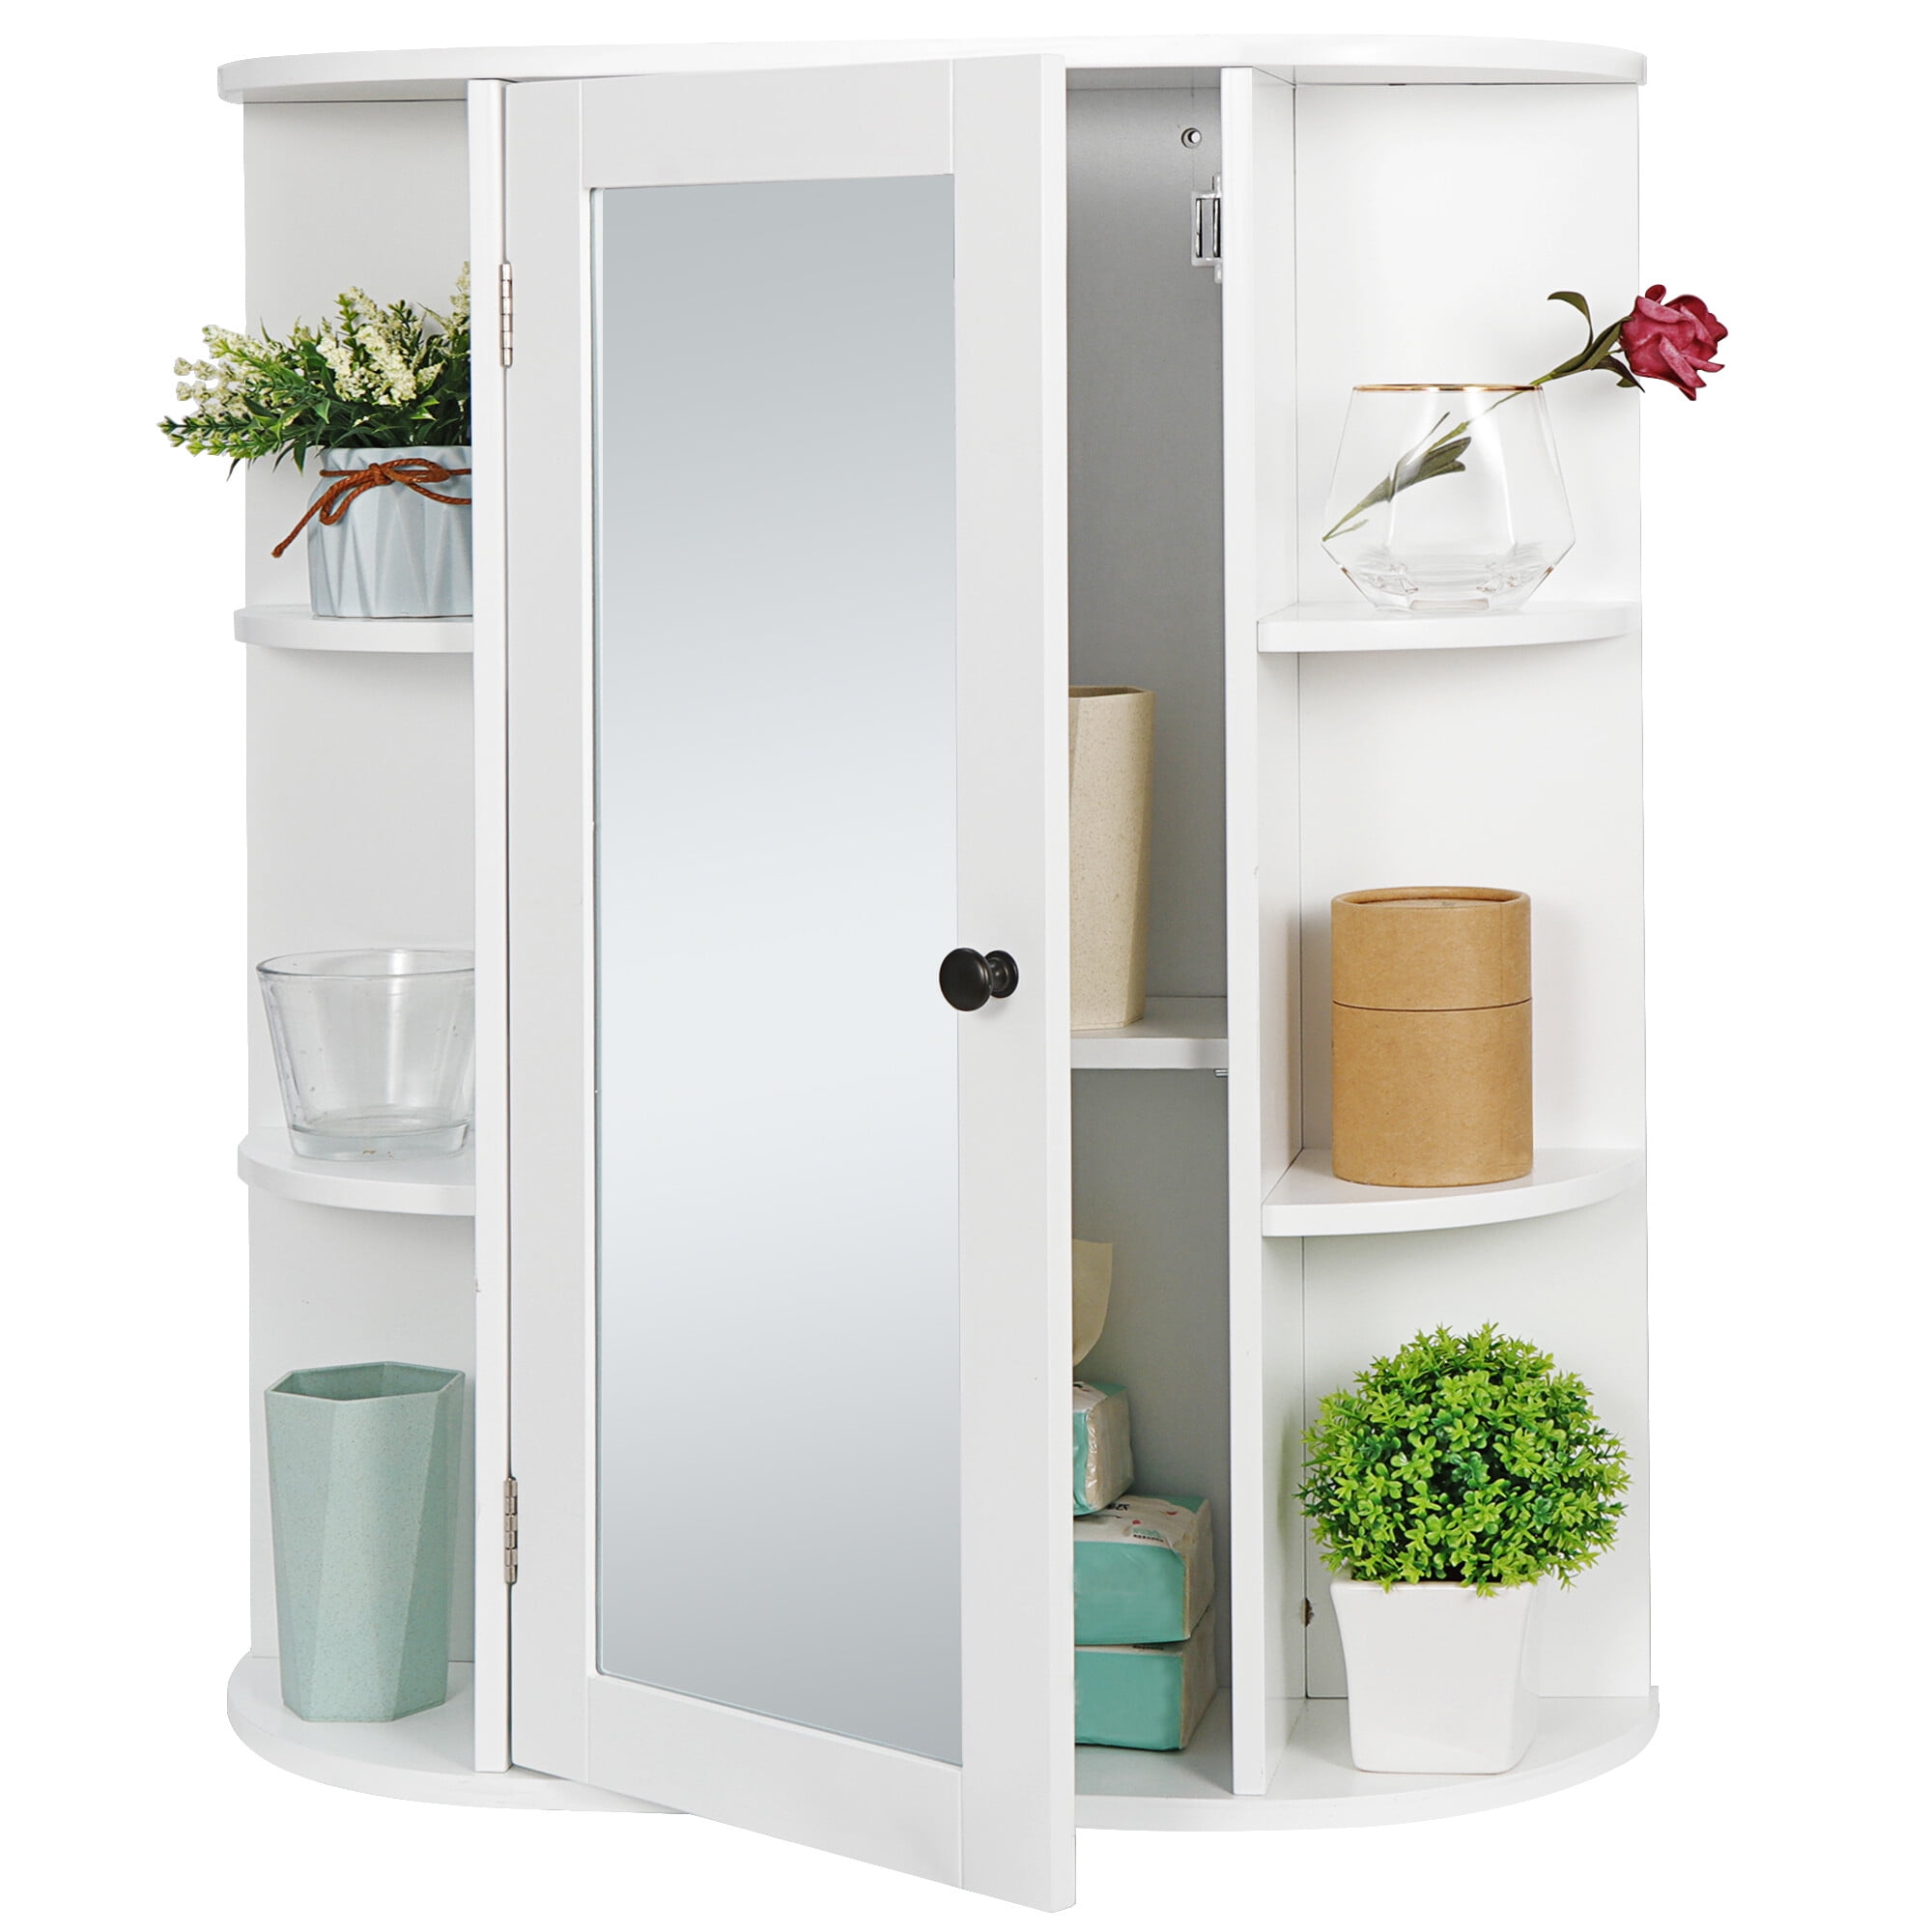 Sansai Modern 2 Glass Doors Wall Cabinet Bathroom Storage White or Dark Espresso 